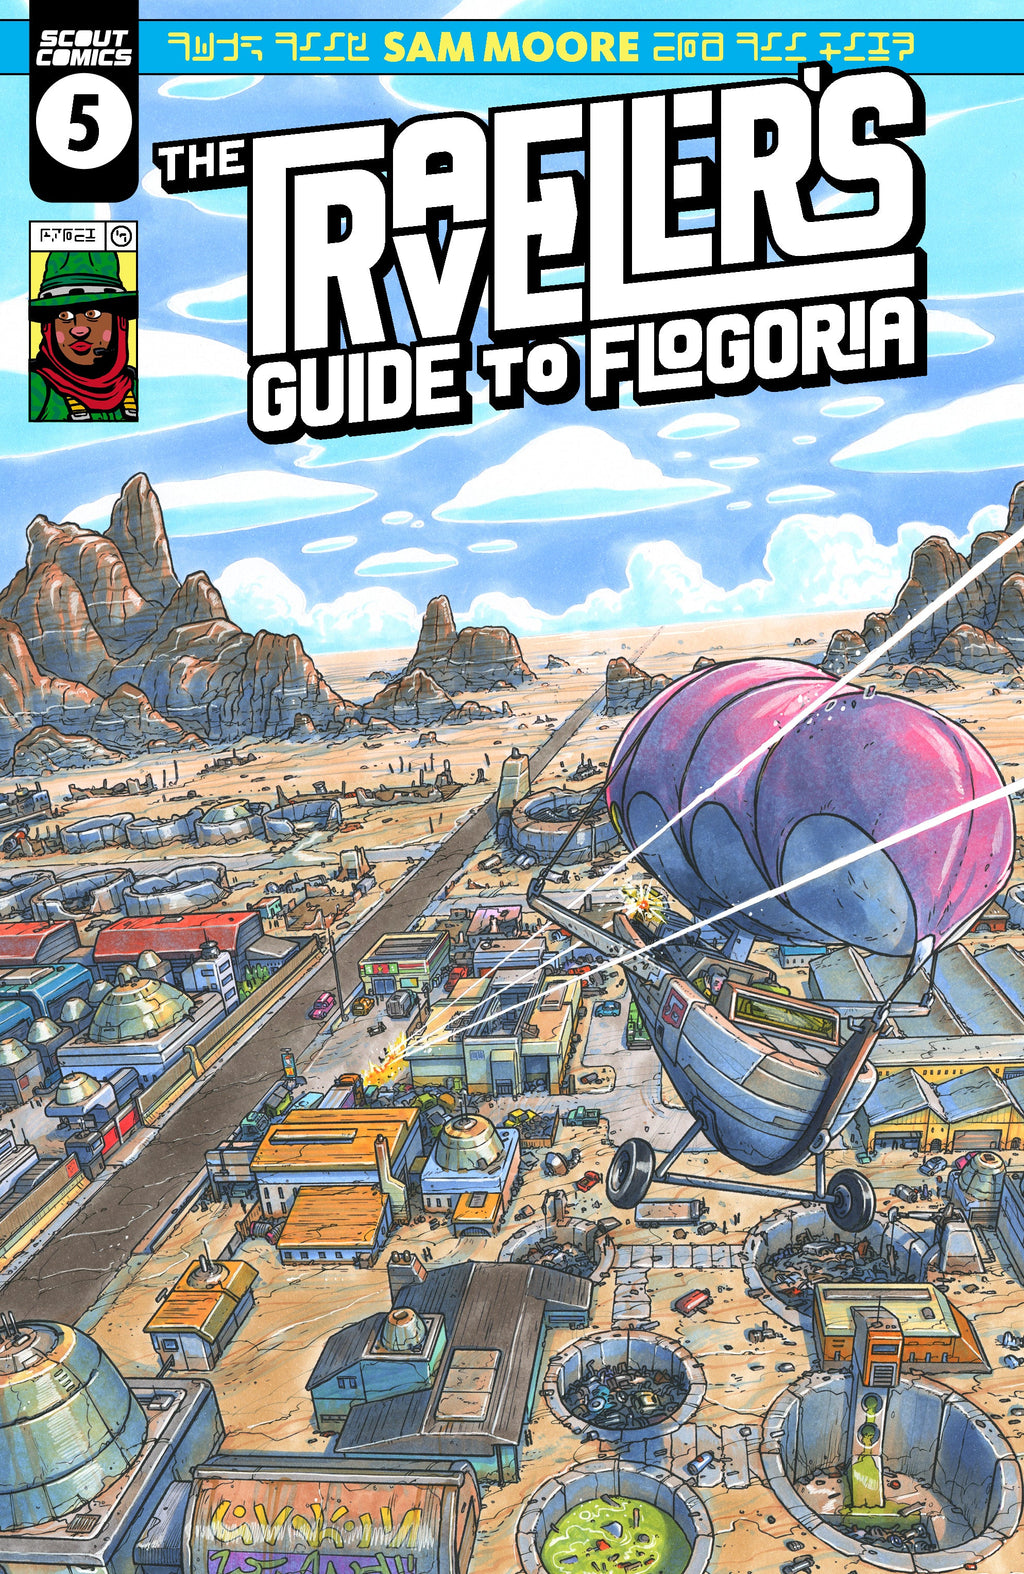 Travelers Guide To Flogoria #5